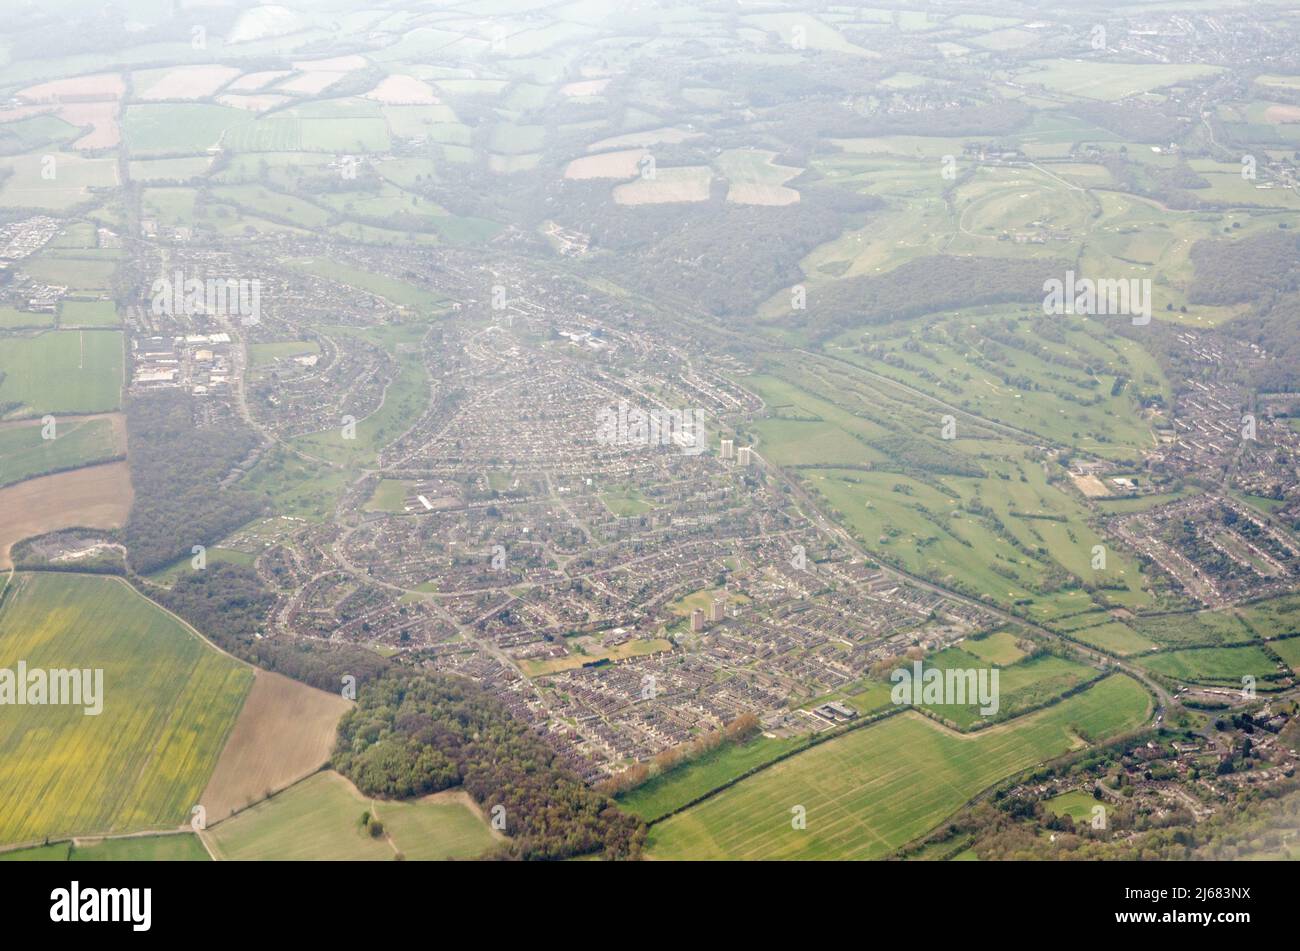 Vista aérea hacia el sur de la ciudad de New Addington en el distrito londinense de Croydon con el campo de golf Addington Court a la derecha Foto de stock